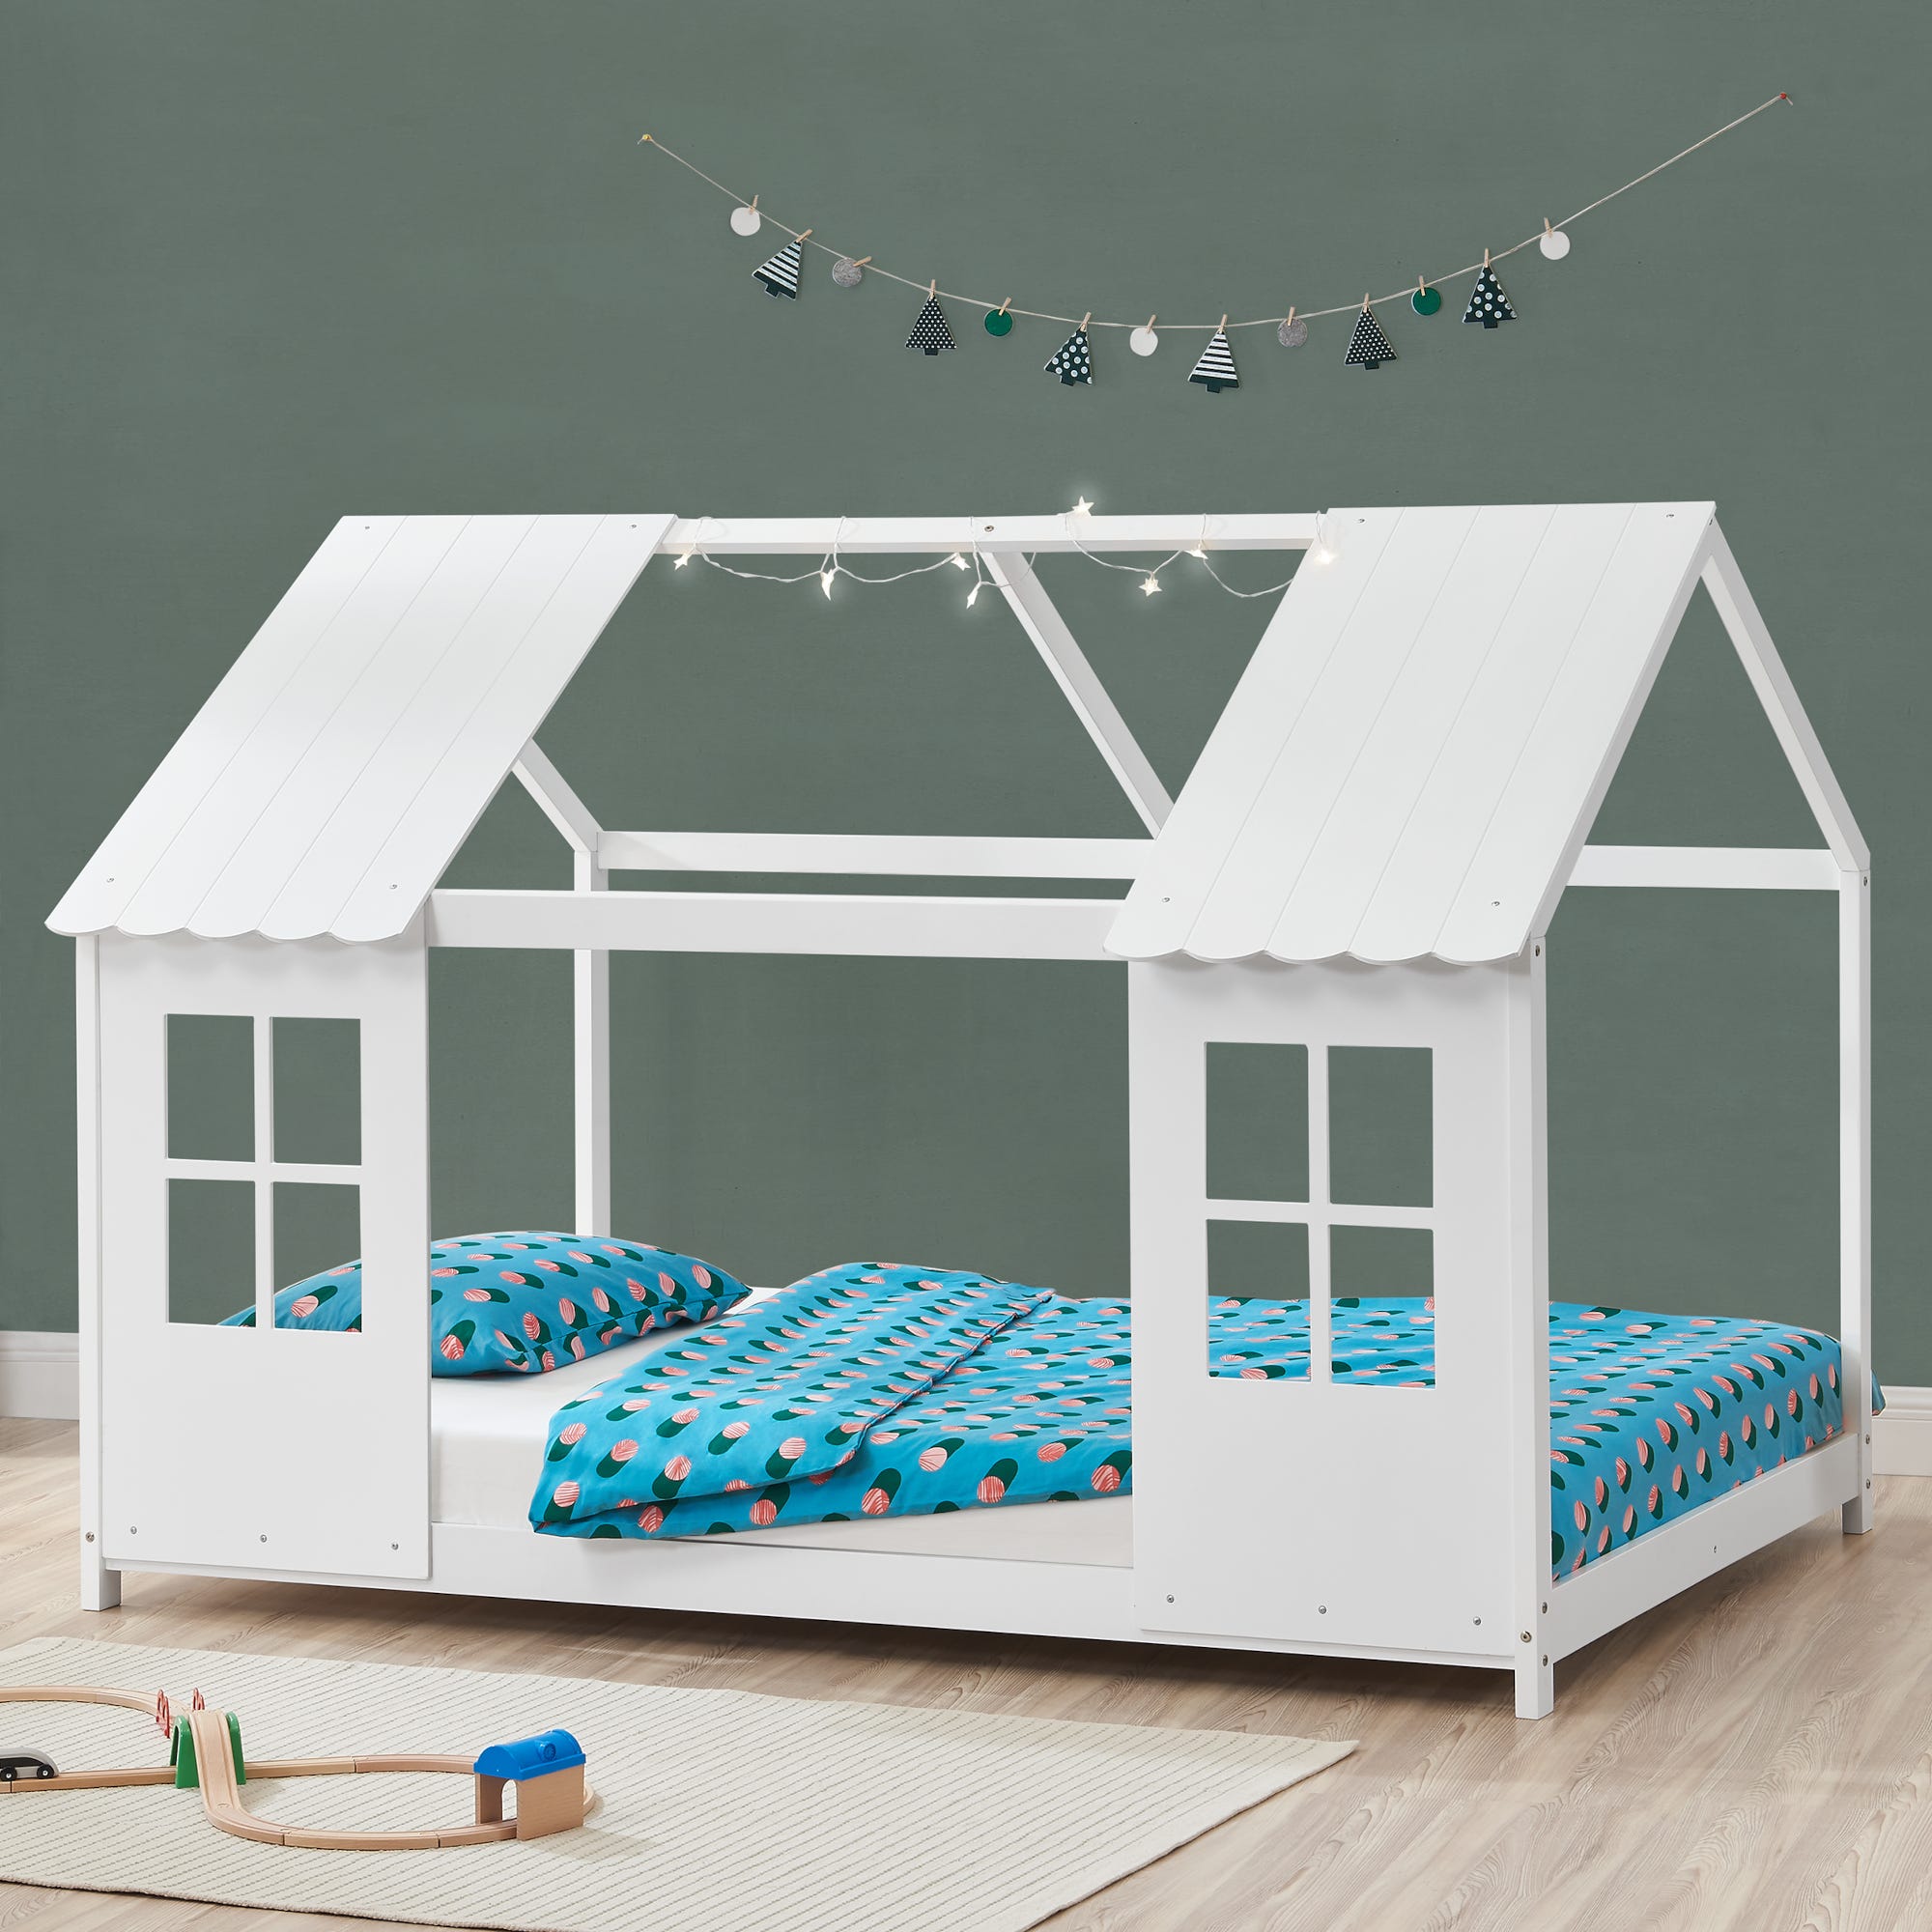 Chambre d'enfants, transformez son lit en cabane ! - Magazine